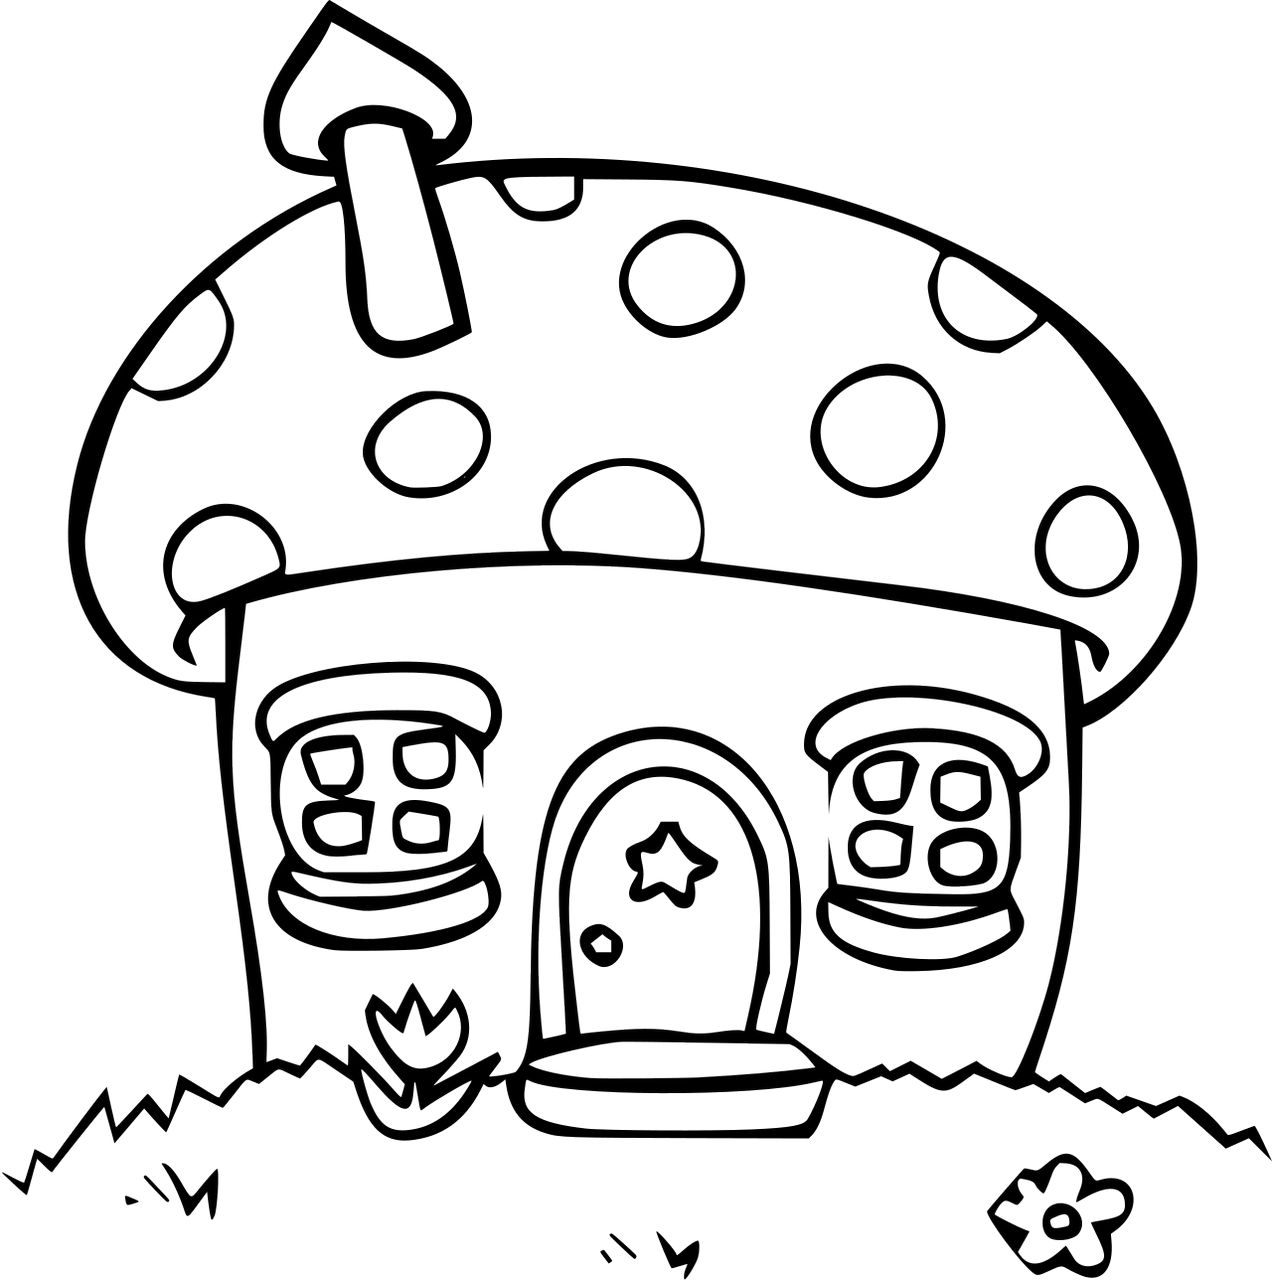 Omalovnka domeek z houby k vytisknut na A4